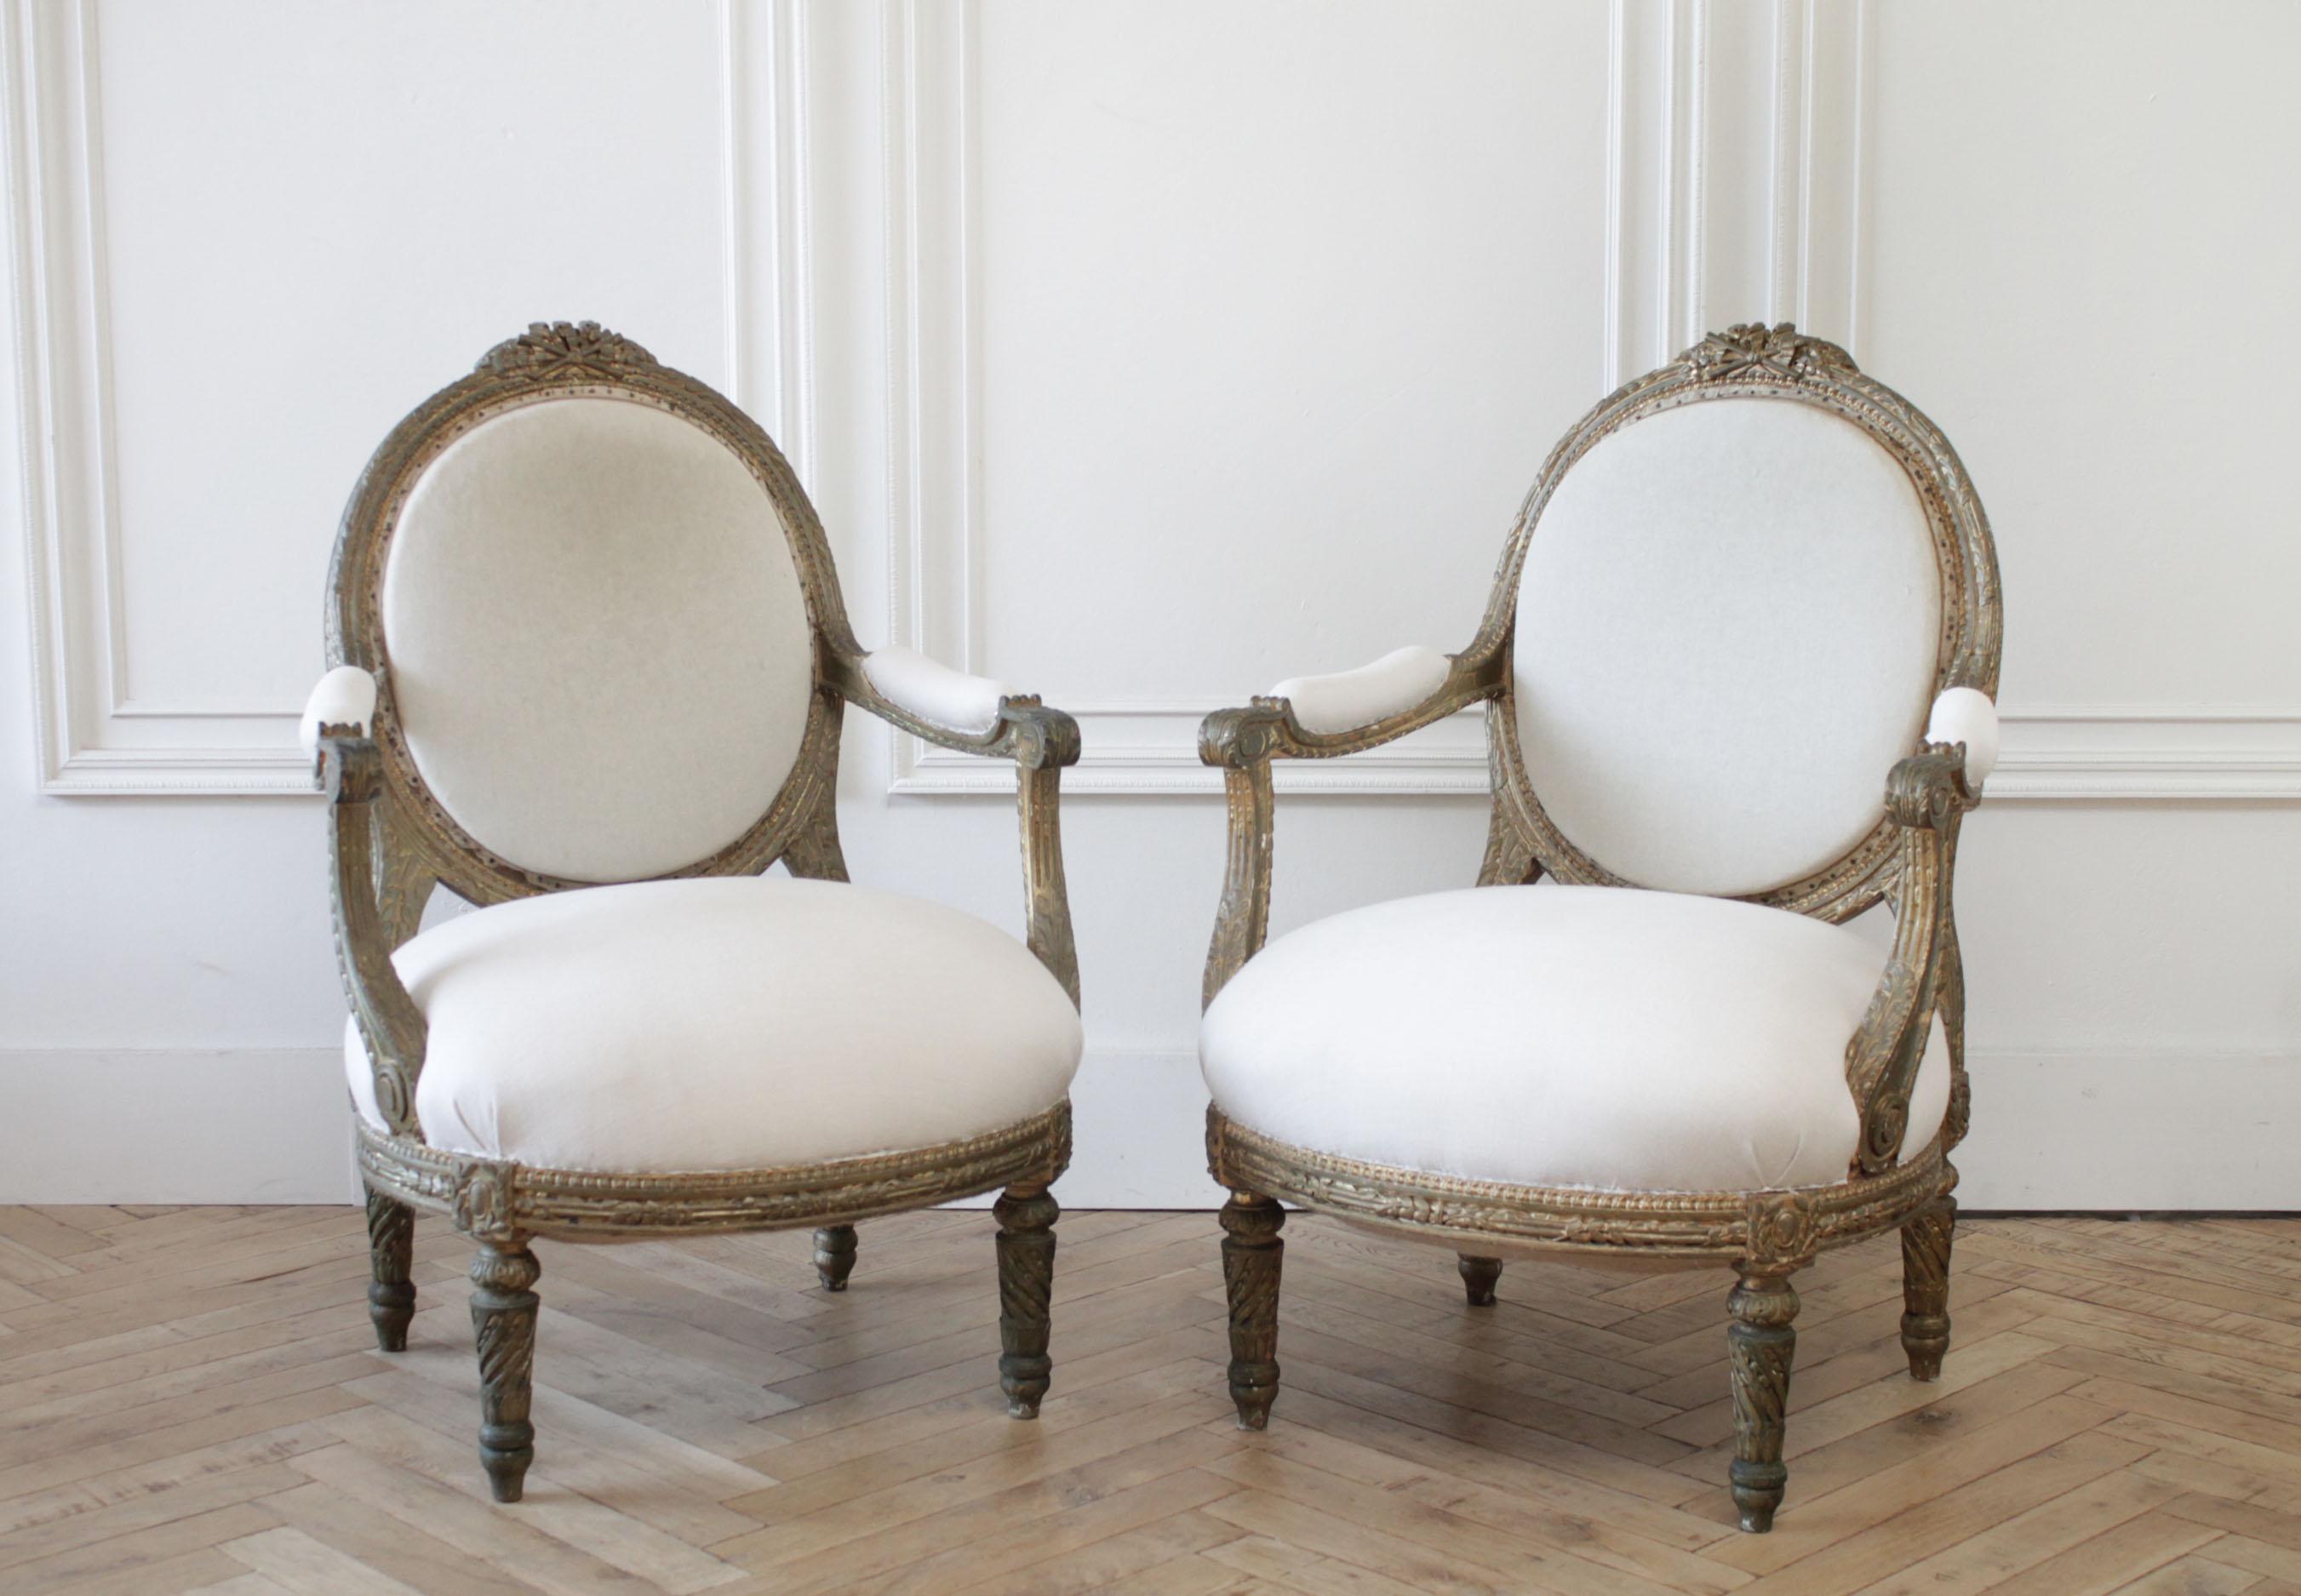 Offene Sessel aus vergoldetem Holz im Stil Louis XVI.
Die Rückenlehne ist mit originalem Musselin gepolstert und mit Nägeln besetzt, die Sitze sind mit einem hellen, hafermehlfarbenen Leinen gepolstert. Die Rahmen sind solide und robust, bereit für